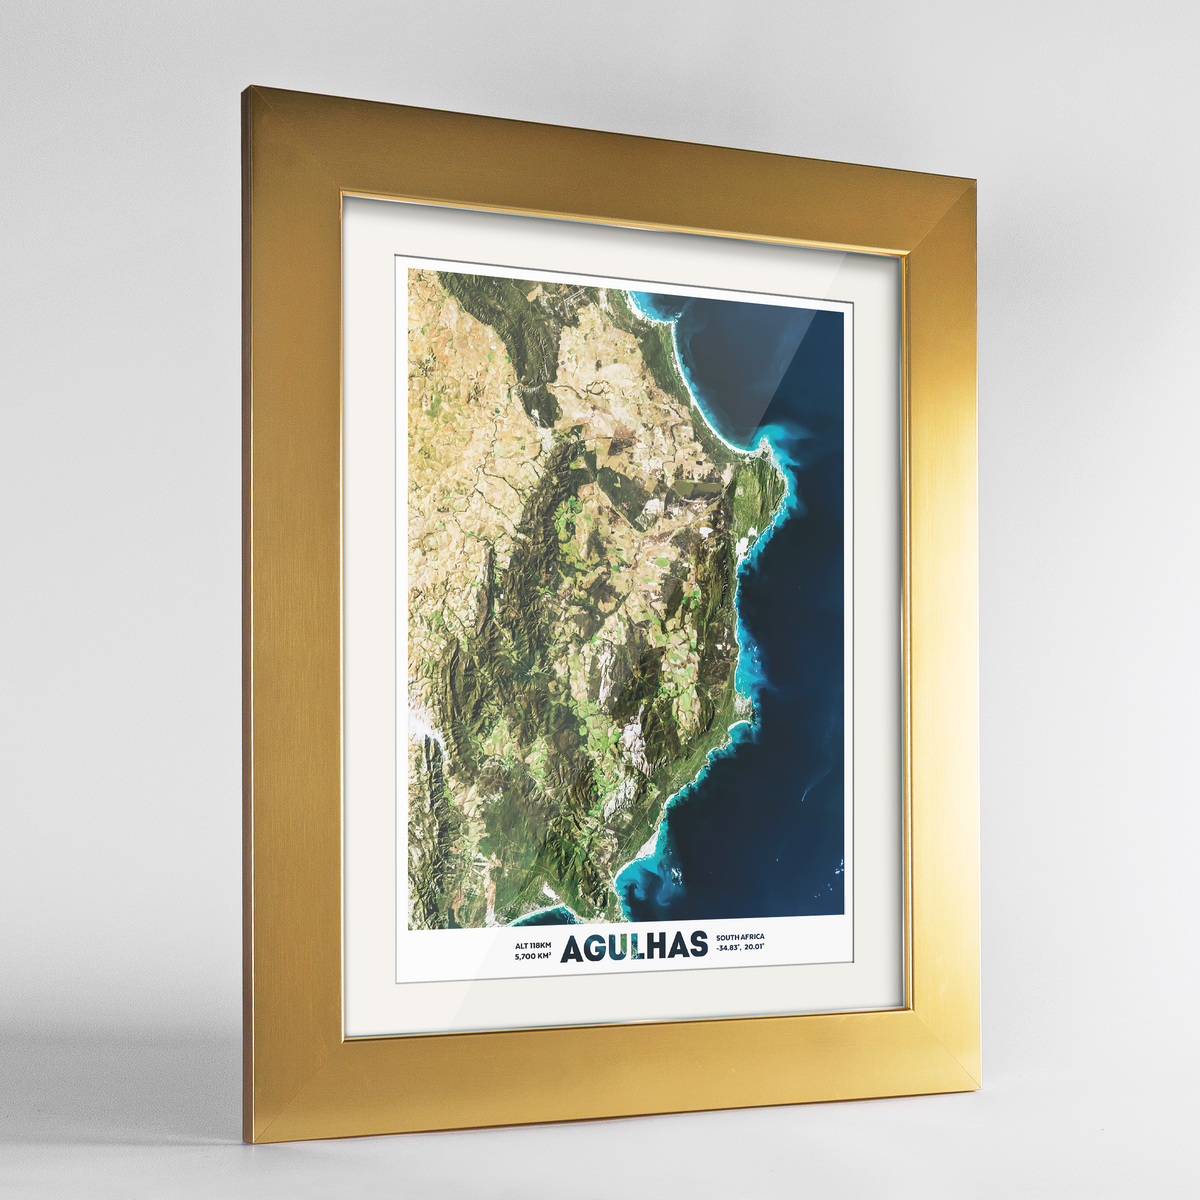 Agulhas Earth Photography Art Print - Framed